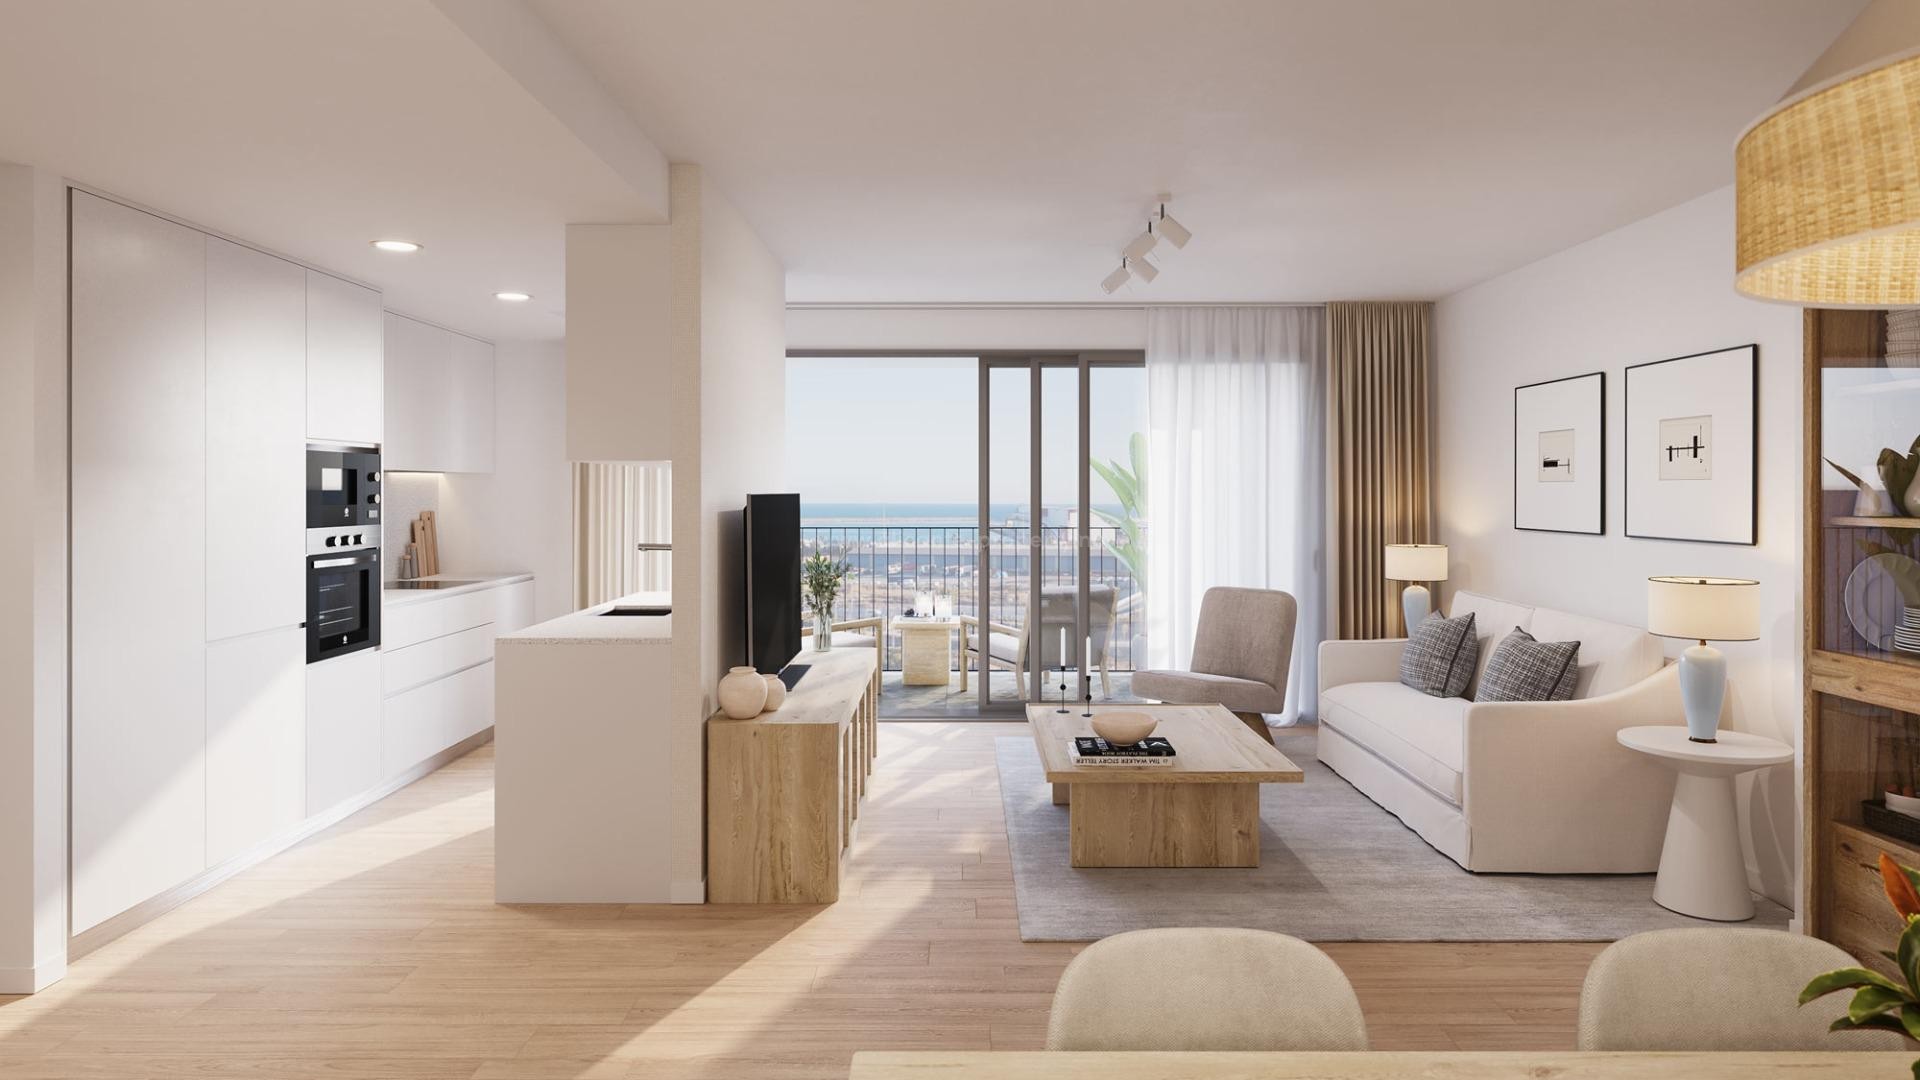 Penthouse-leiligheter i Alicante by, 2, 3 og 4 soverom, panoramautsikt, 10 min gange til sentrum. Spektakulære fellesarealer med basseng, treningsstudio mm